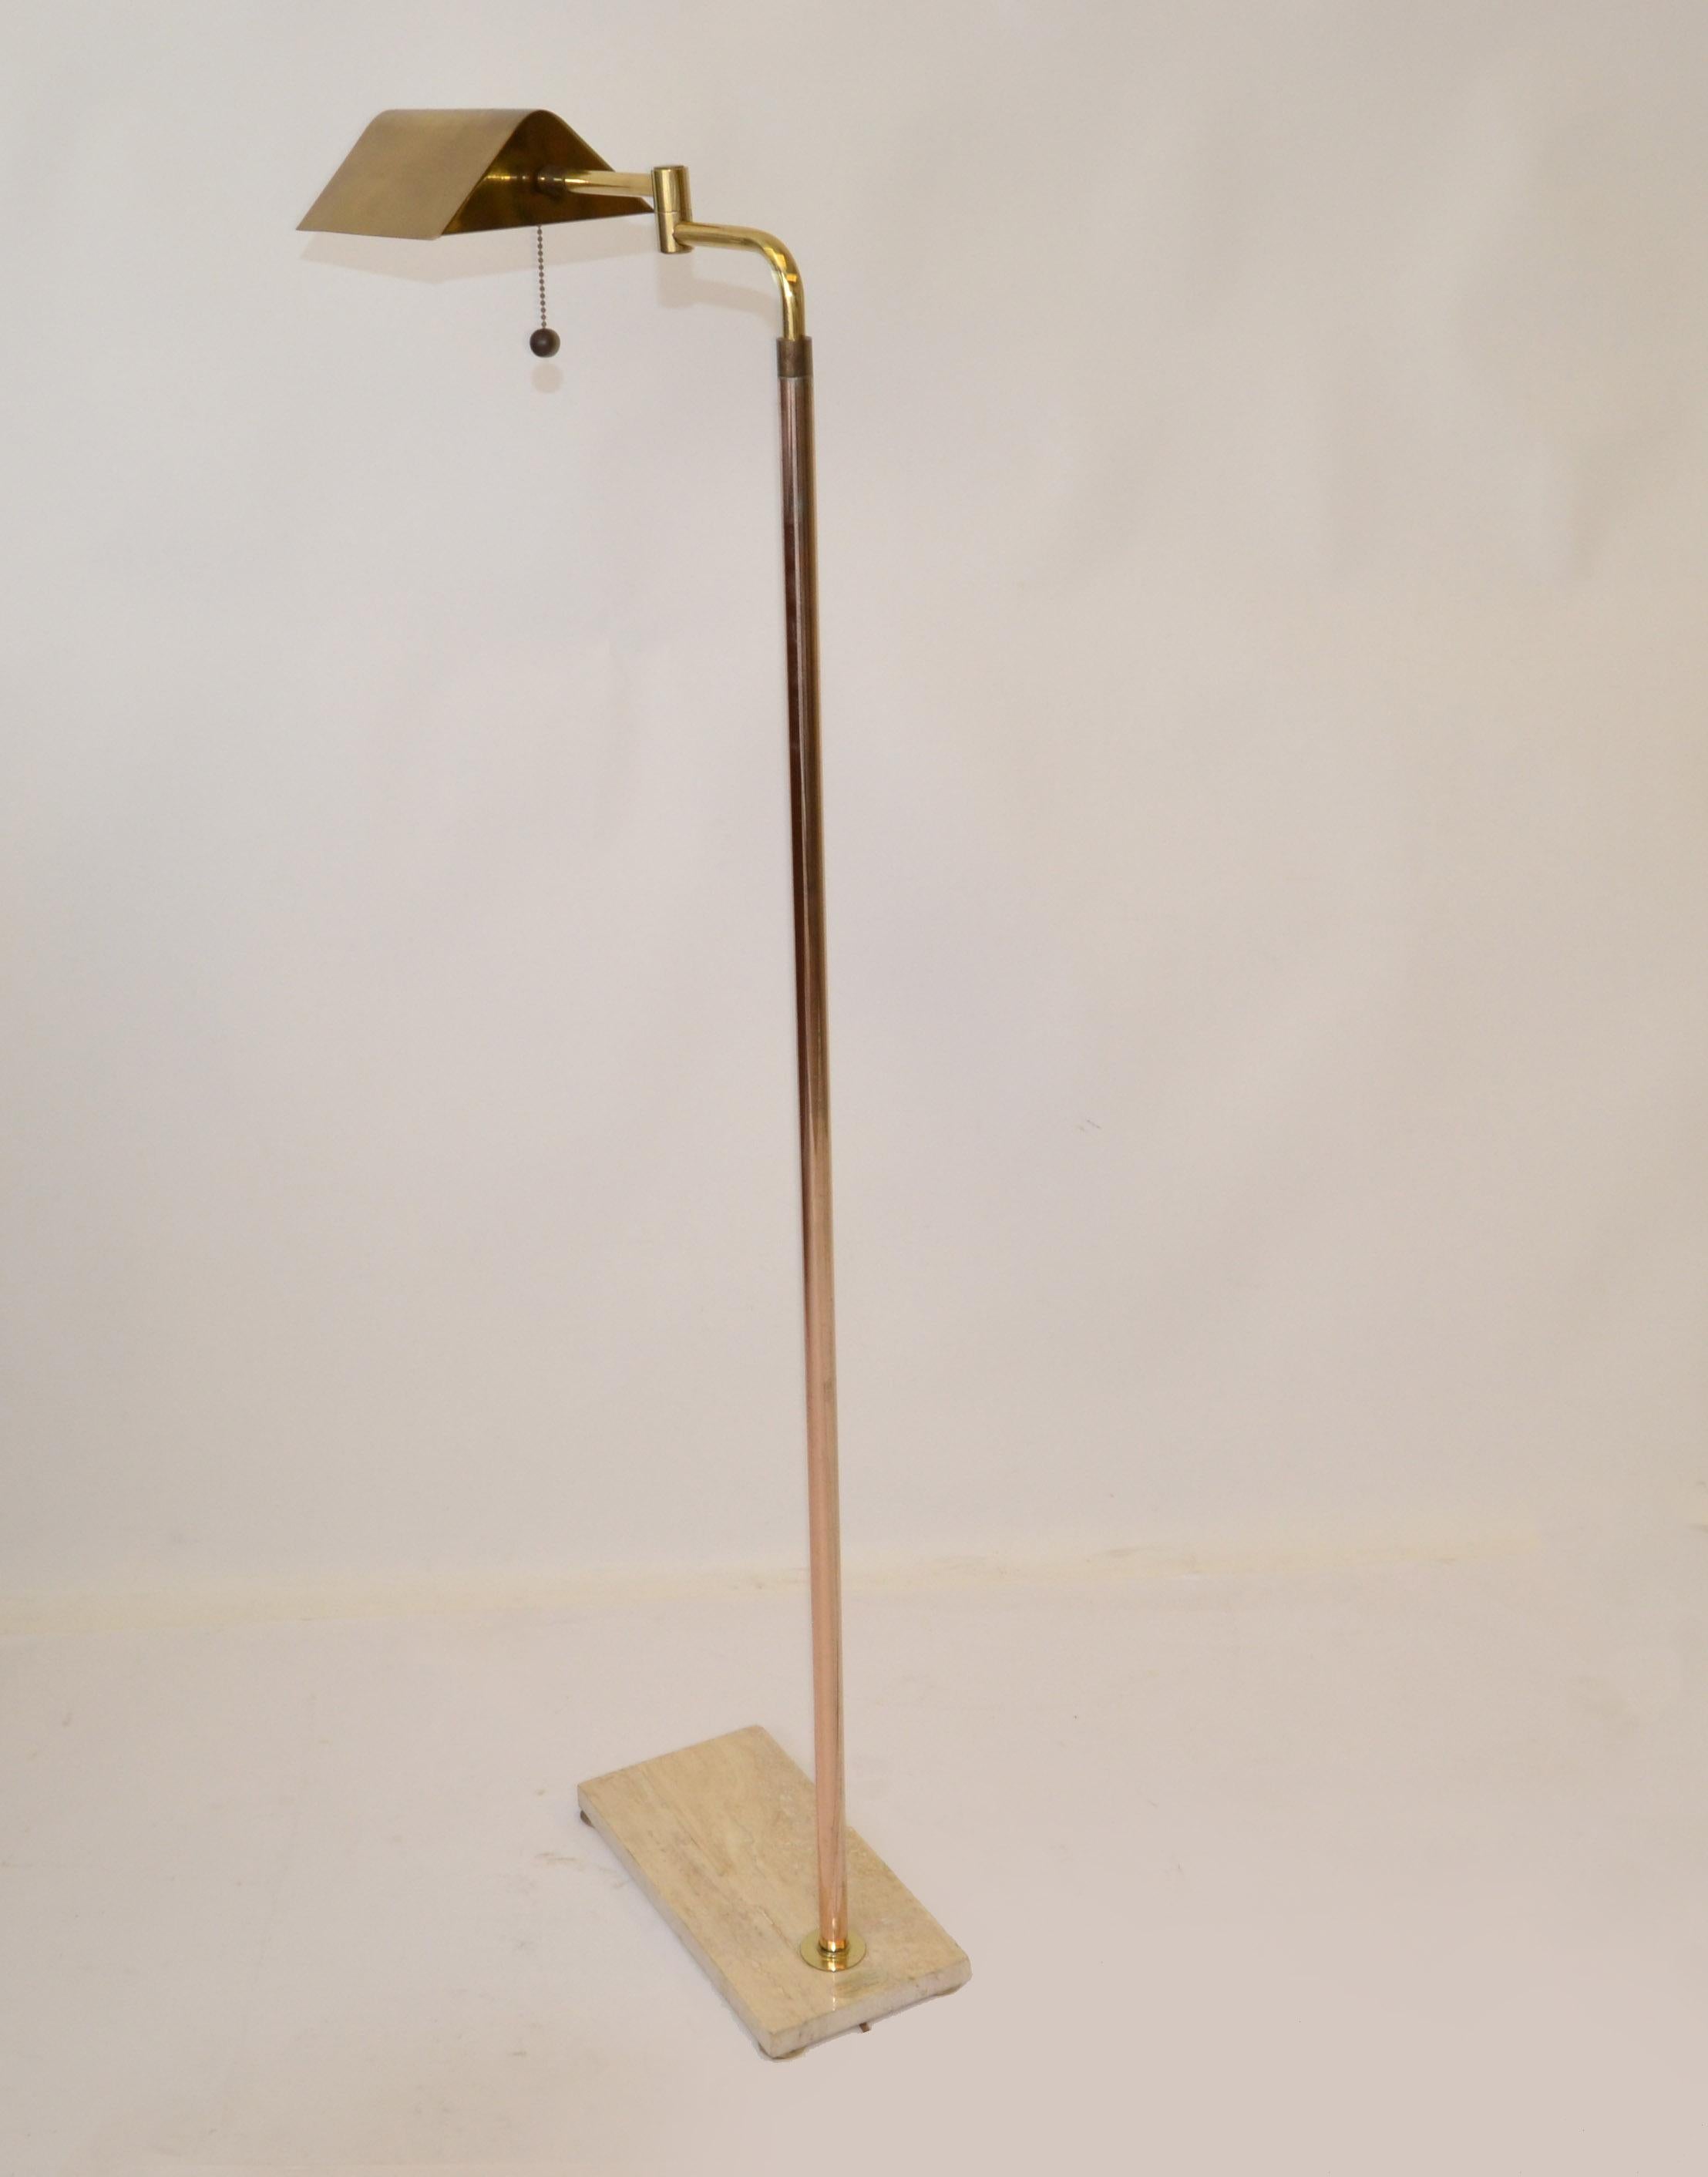 Lampadaire ou lampe de lecture en laiton à deux patines, de style italien moderne du milieu du siècle, monté sur une base en marbre beige véritable fabriqué à la main.
Livré avec une pédale de commande et l'abat-jour est rotatif.
Câblé pour les